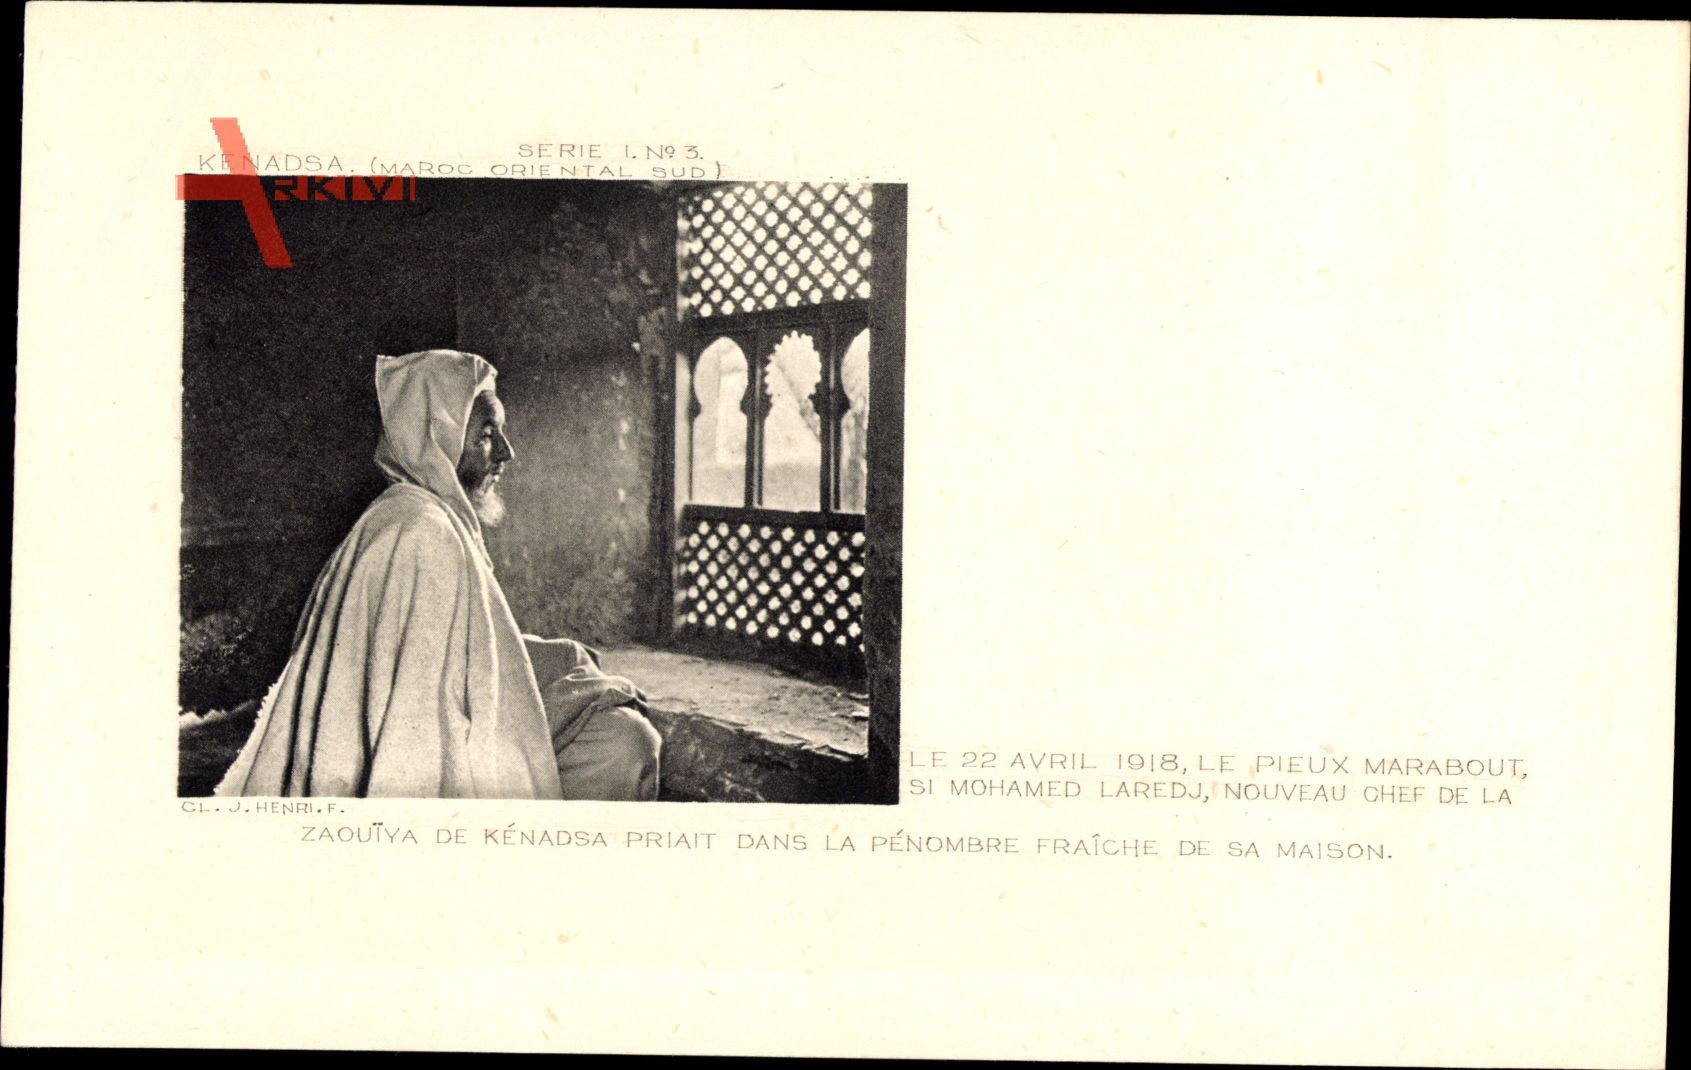 Kenadsa Marokko, Le 22 Avril 1918, le Pieux marabout, Si Mohamed Laredj